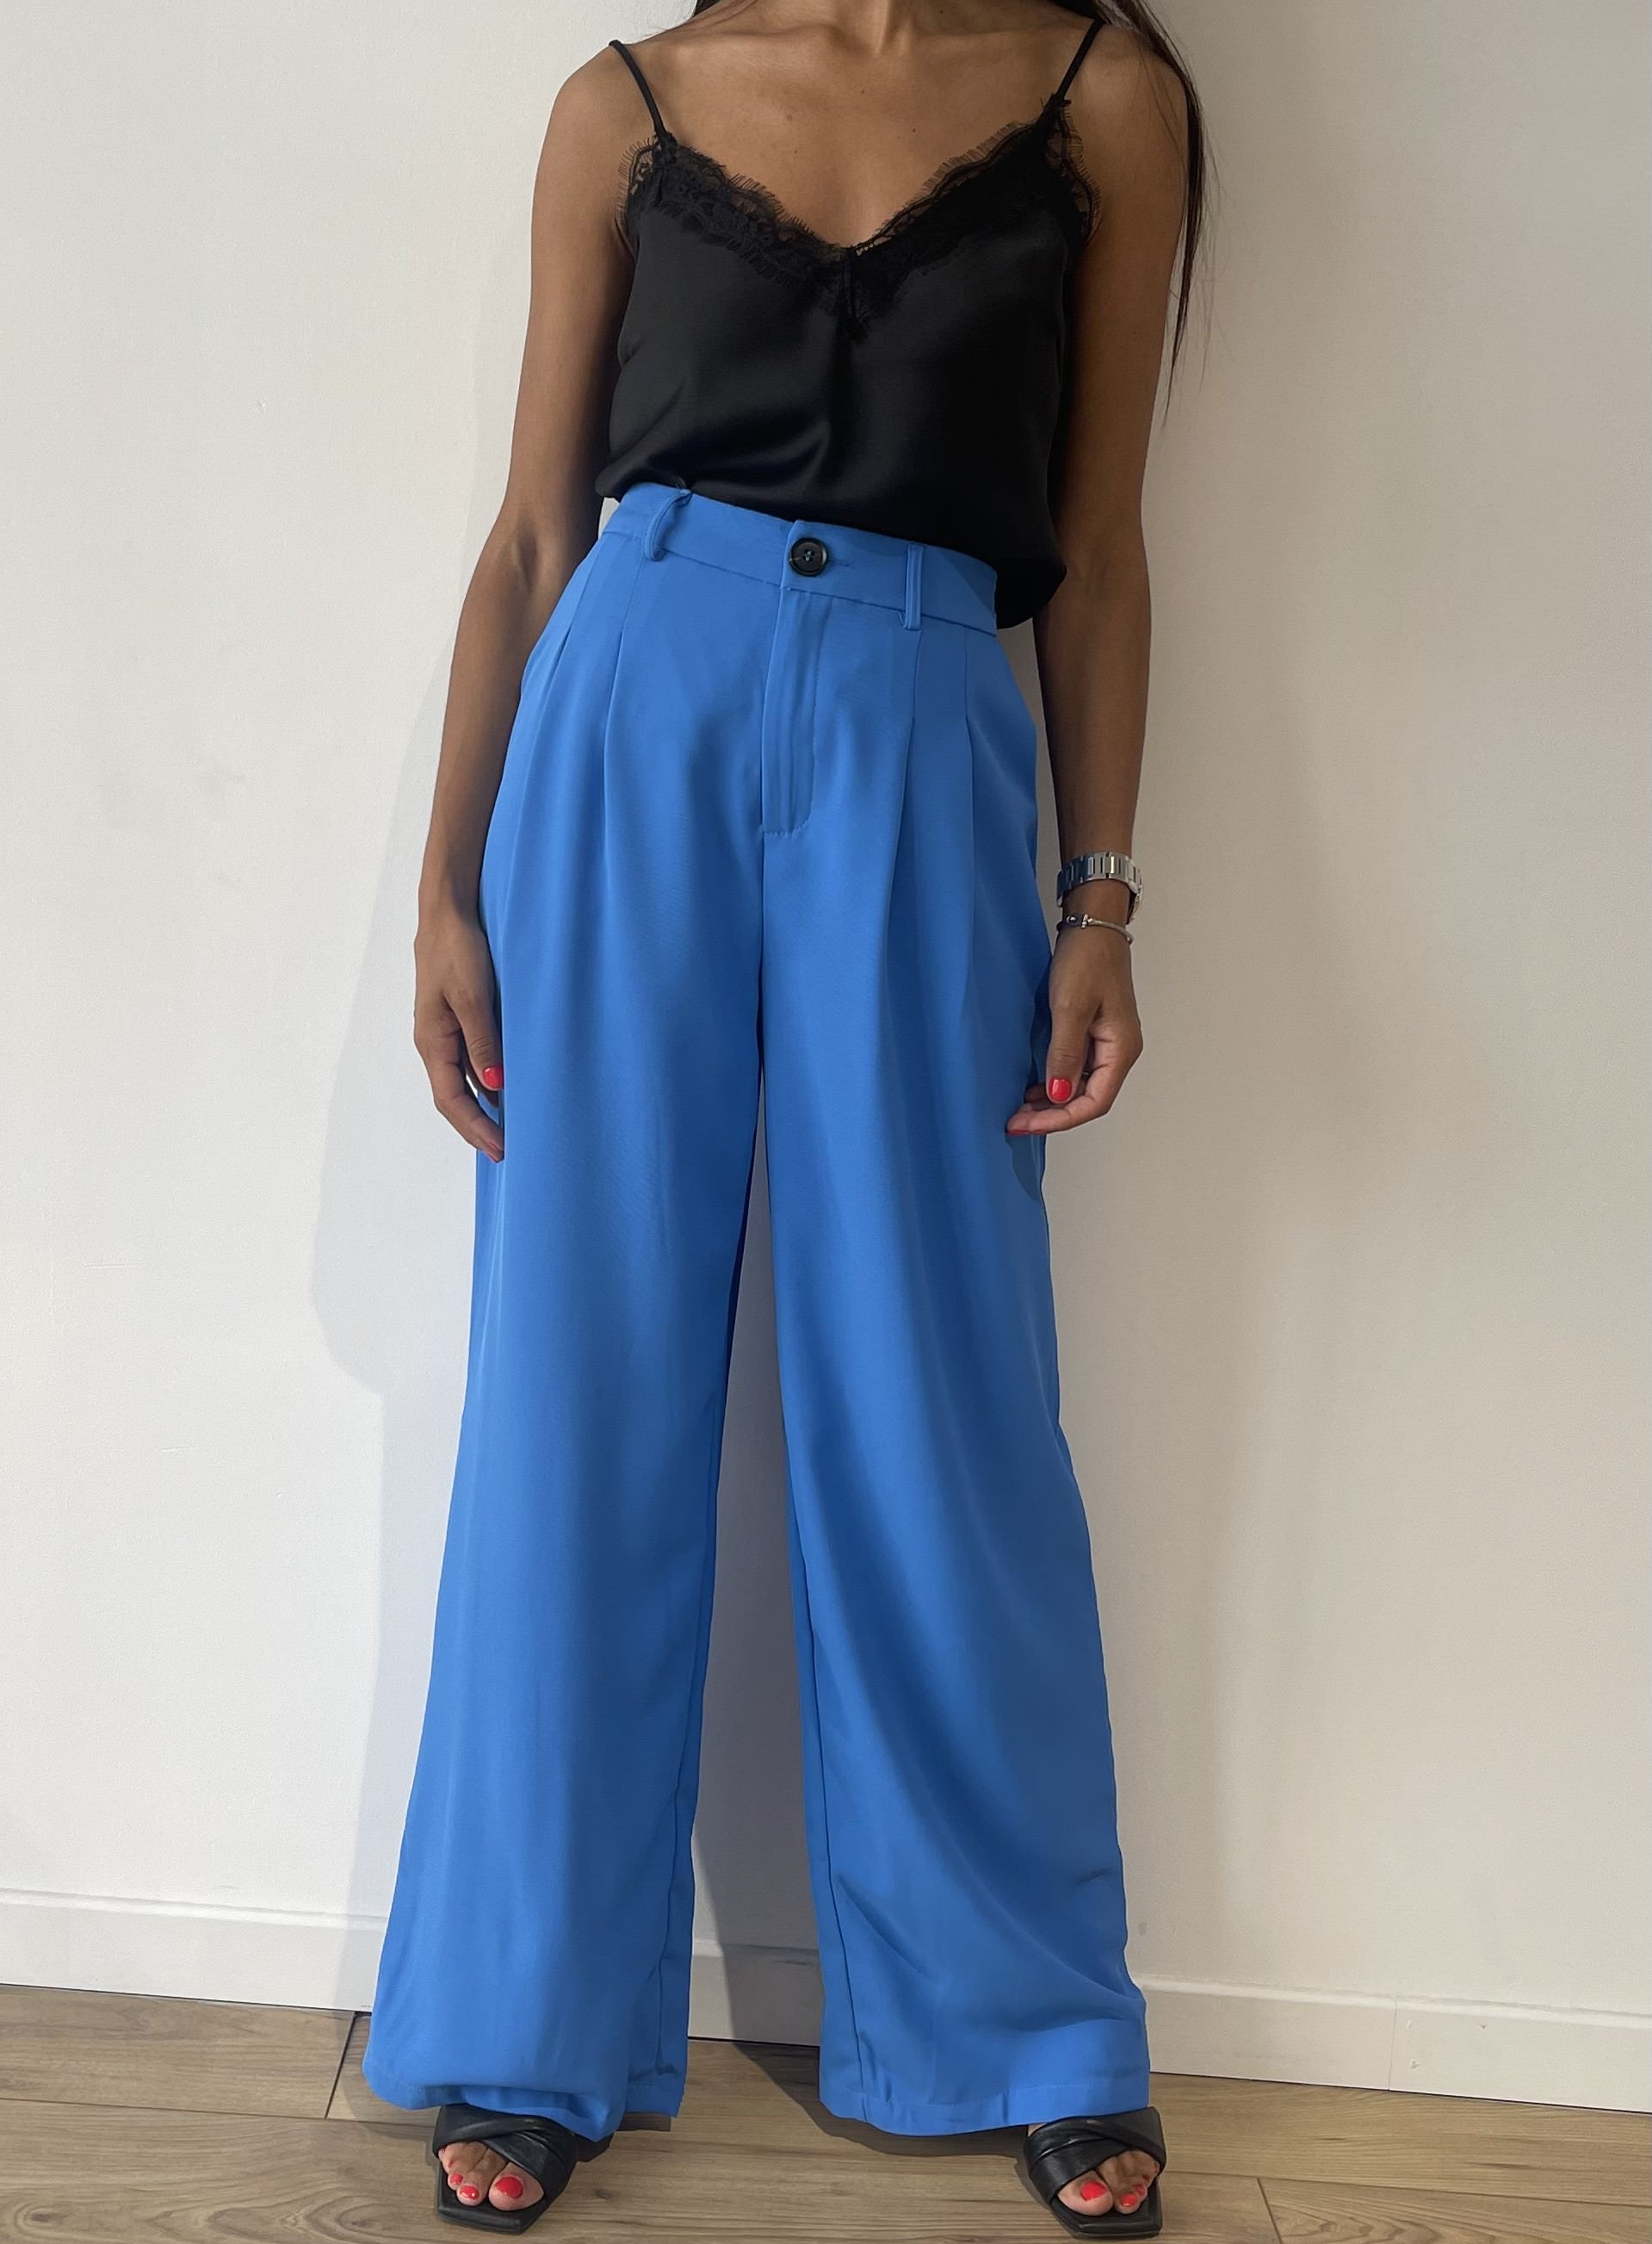 Pantalon parisien fluide bleu large avec ceinture et poches